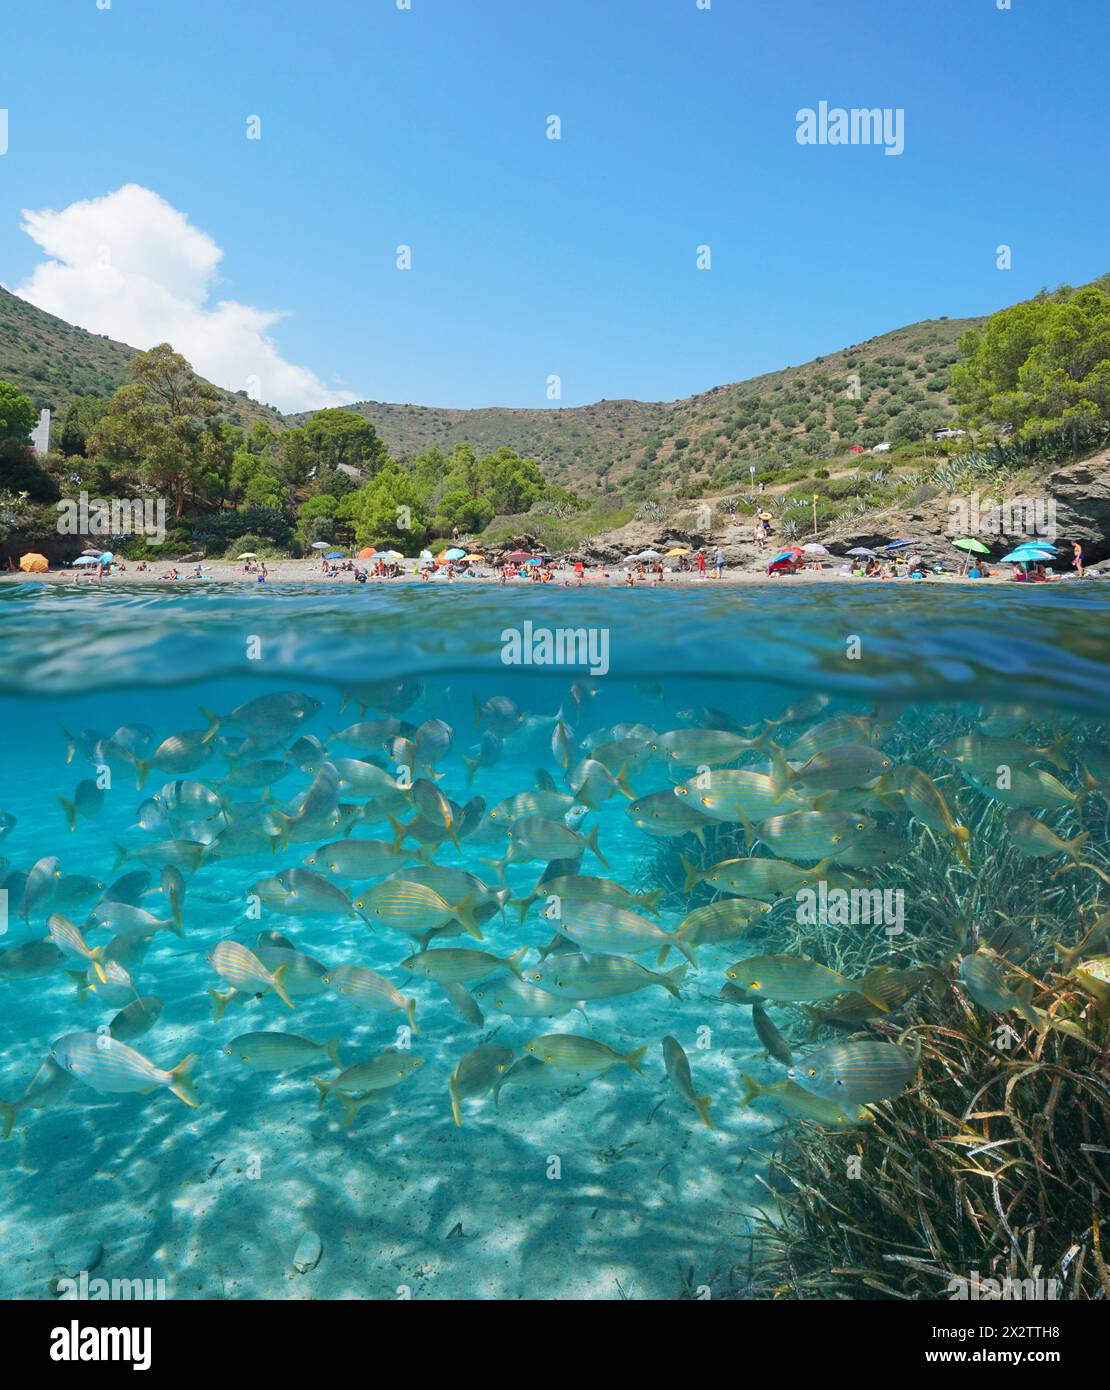 Côte méditerranéenne en Espagne, plage en été et banc de poissons sous l'eau, vue partagée sur et sous la surface de l'eau, scène naturelle, Costa Brava Banque D'Images